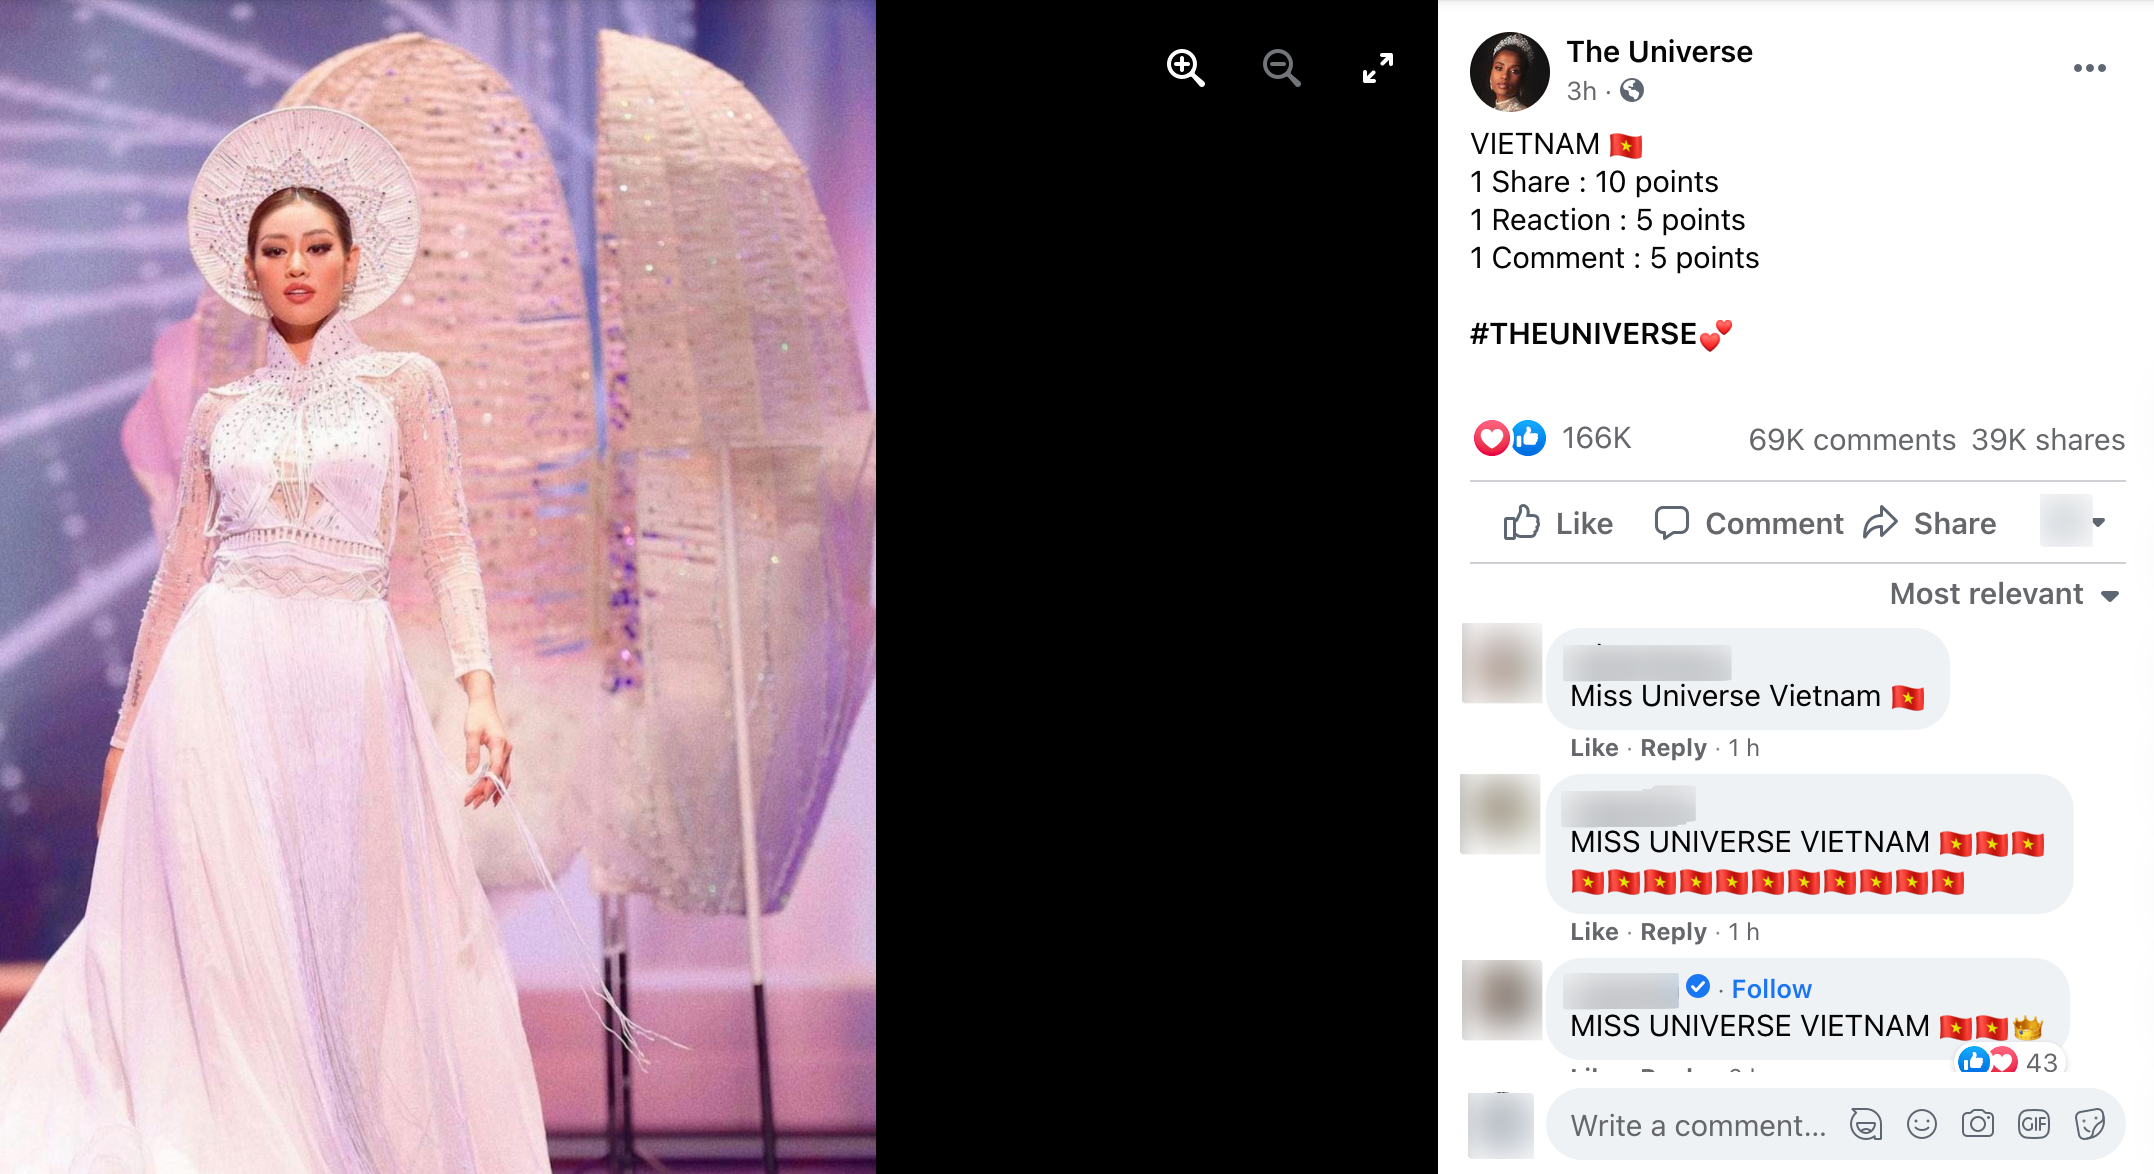 Cảnh báo: Xuất hiện fanpage Miss Universe giả mạo kêu gọi vote ảo cho Khánh Vân để câu like, khiến trăm nghìn fan đổ xô bình chọn - Ảnh 4.